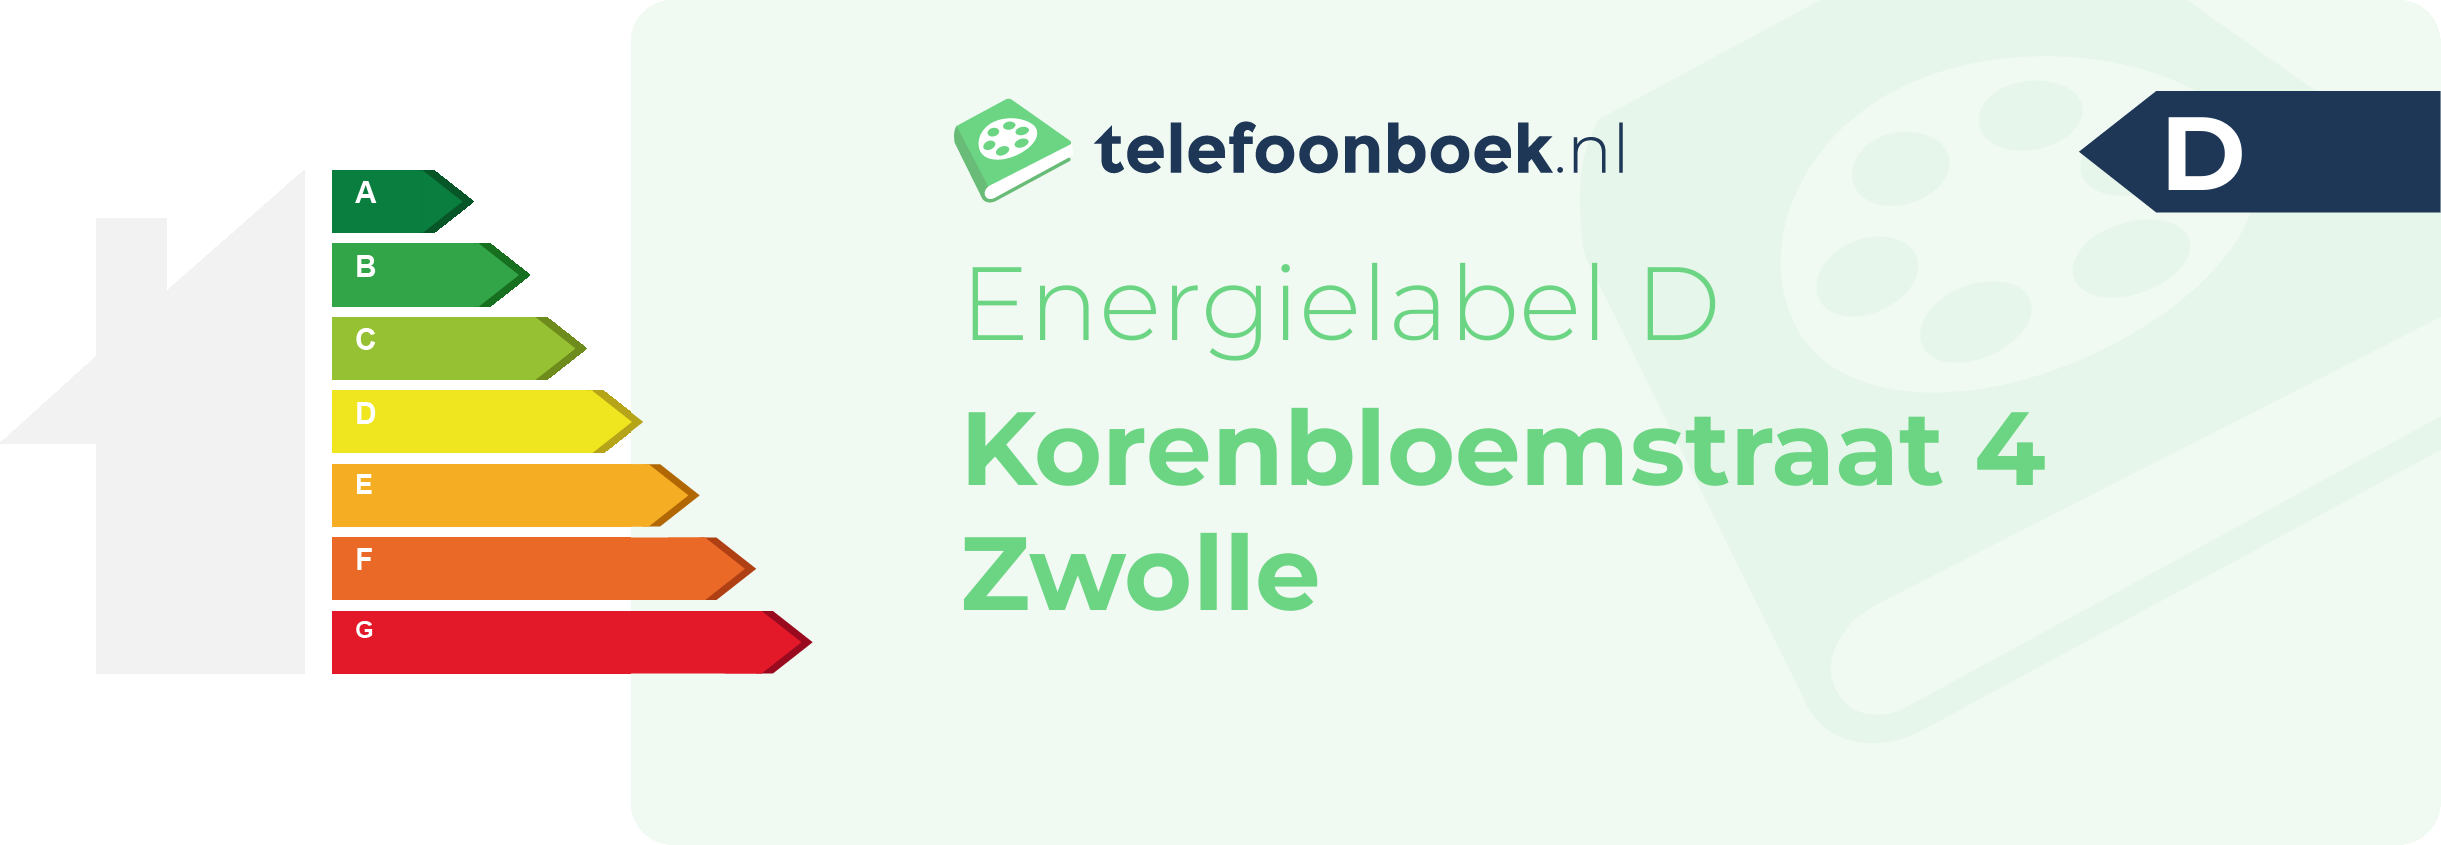 Energielabel Korenbloemstraat 4 Zwolle